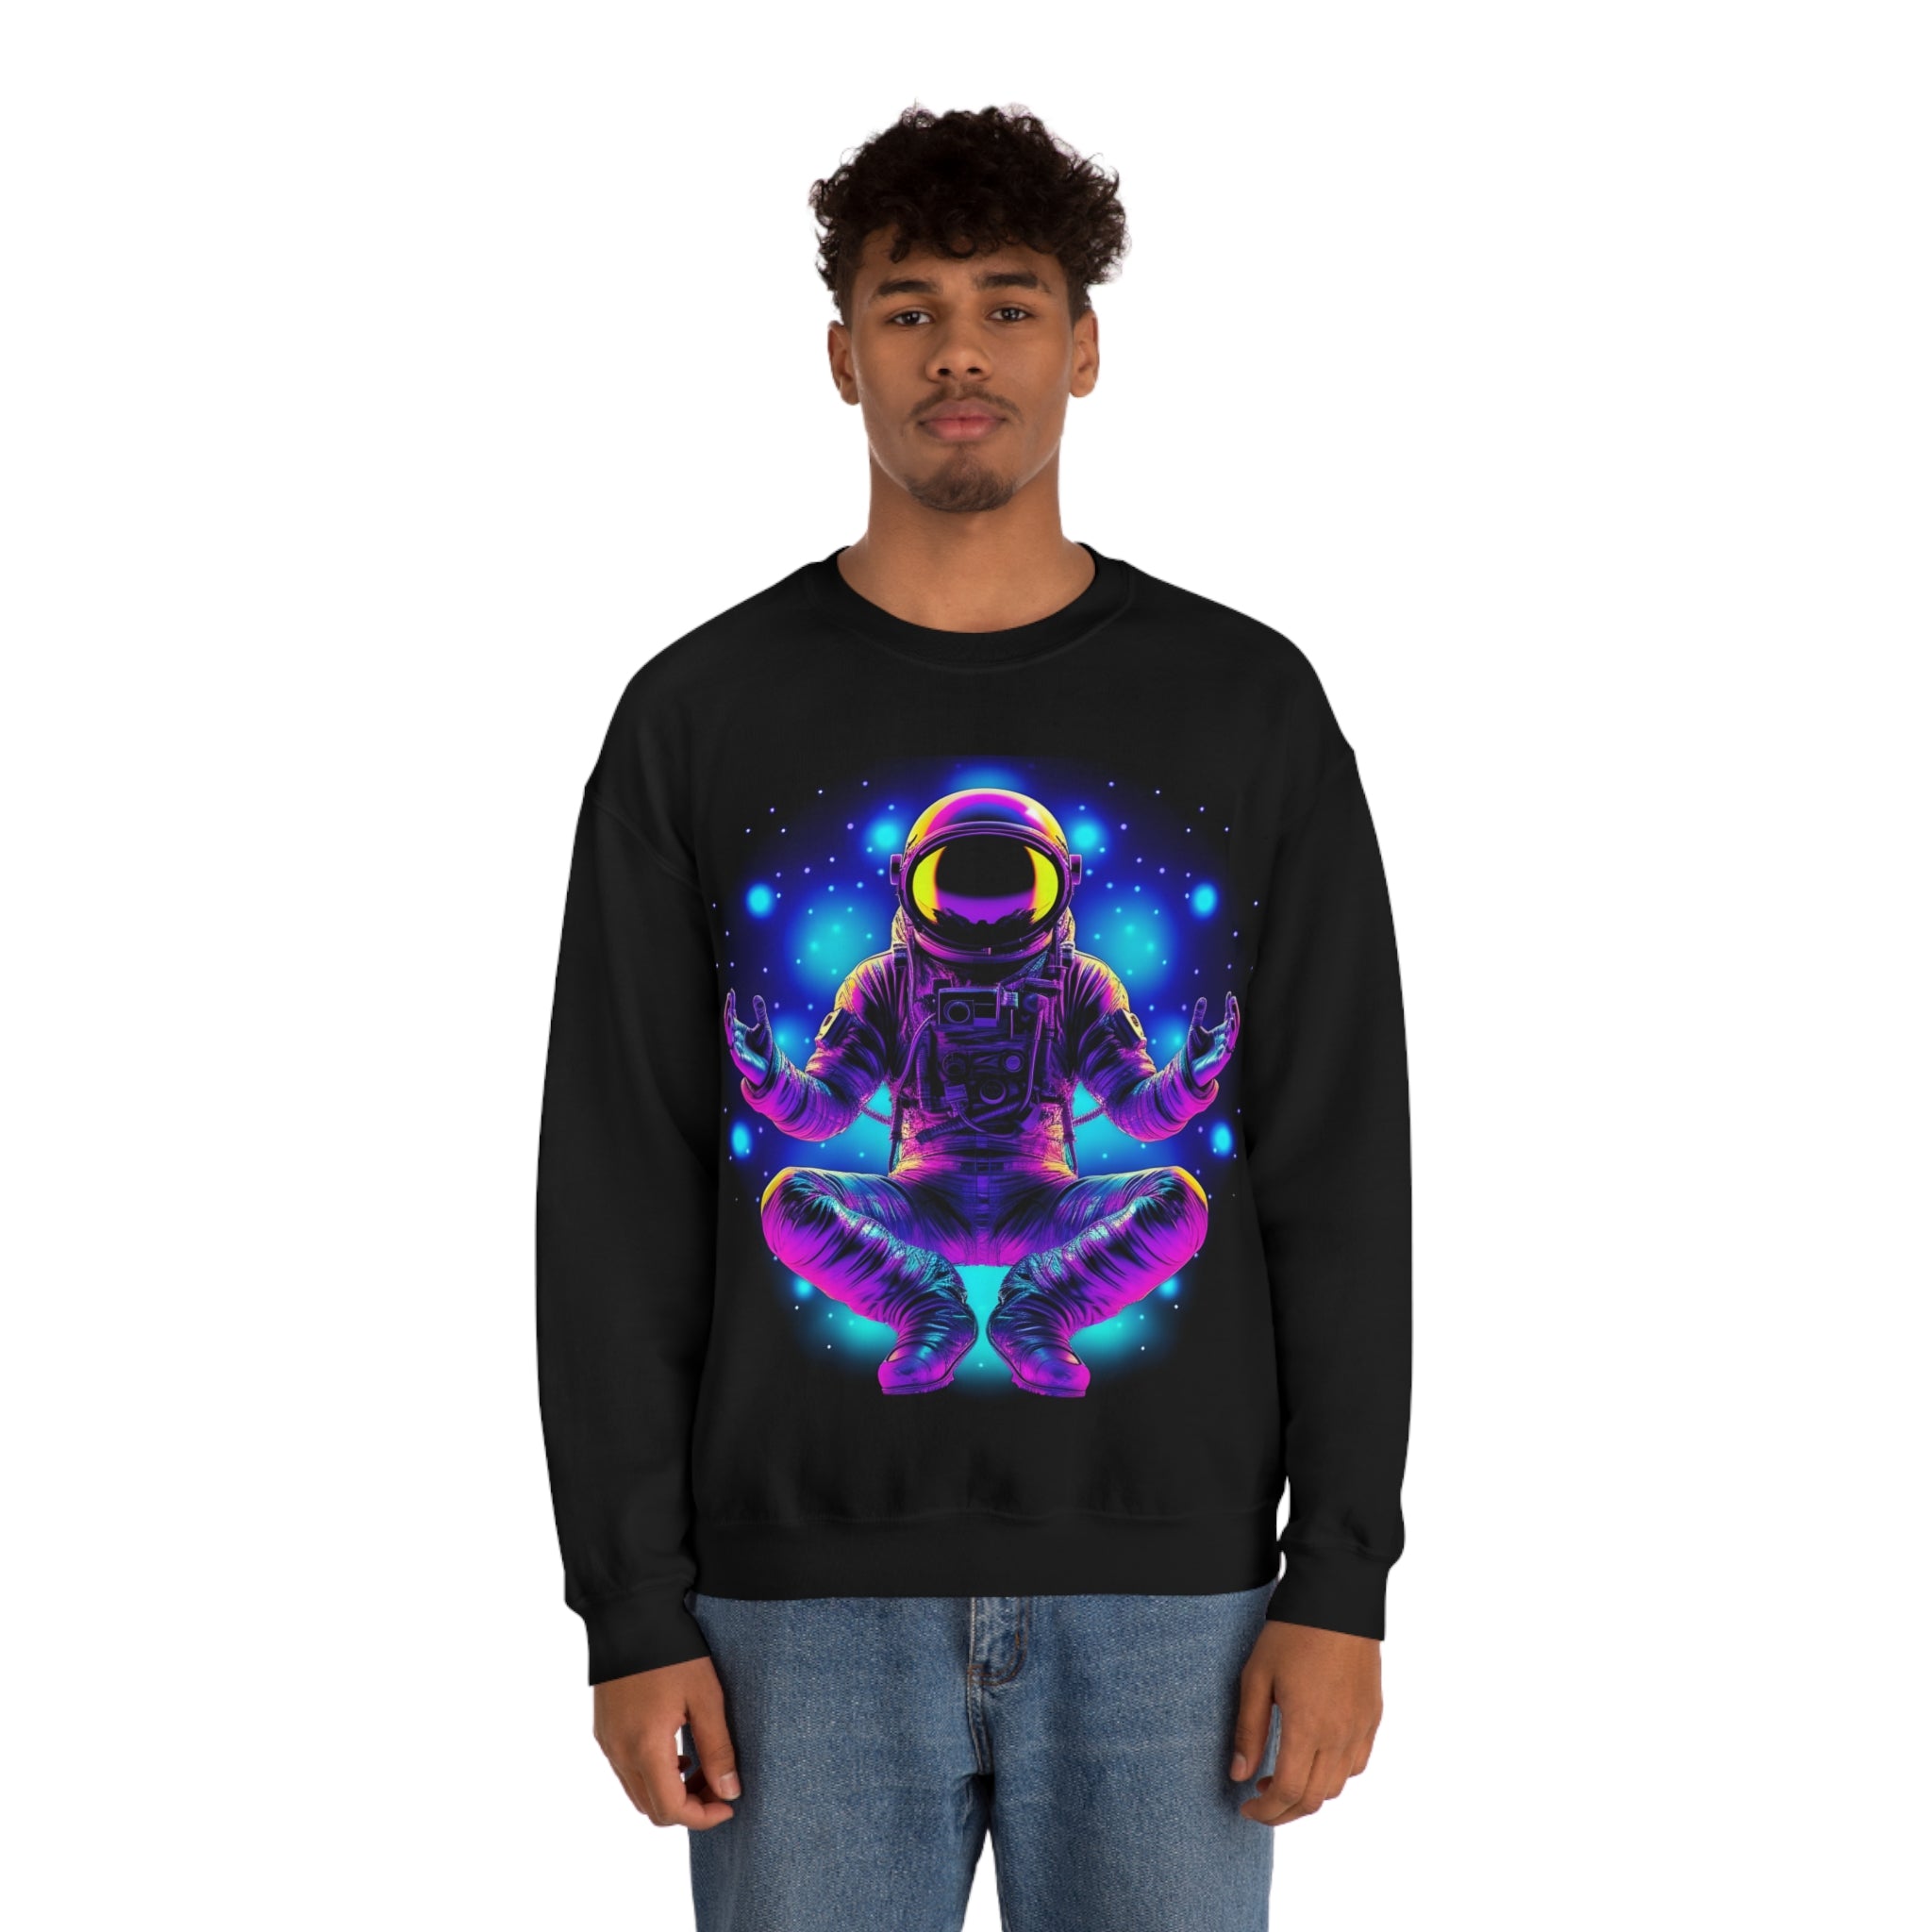 Astral Dreams Sweatshirt